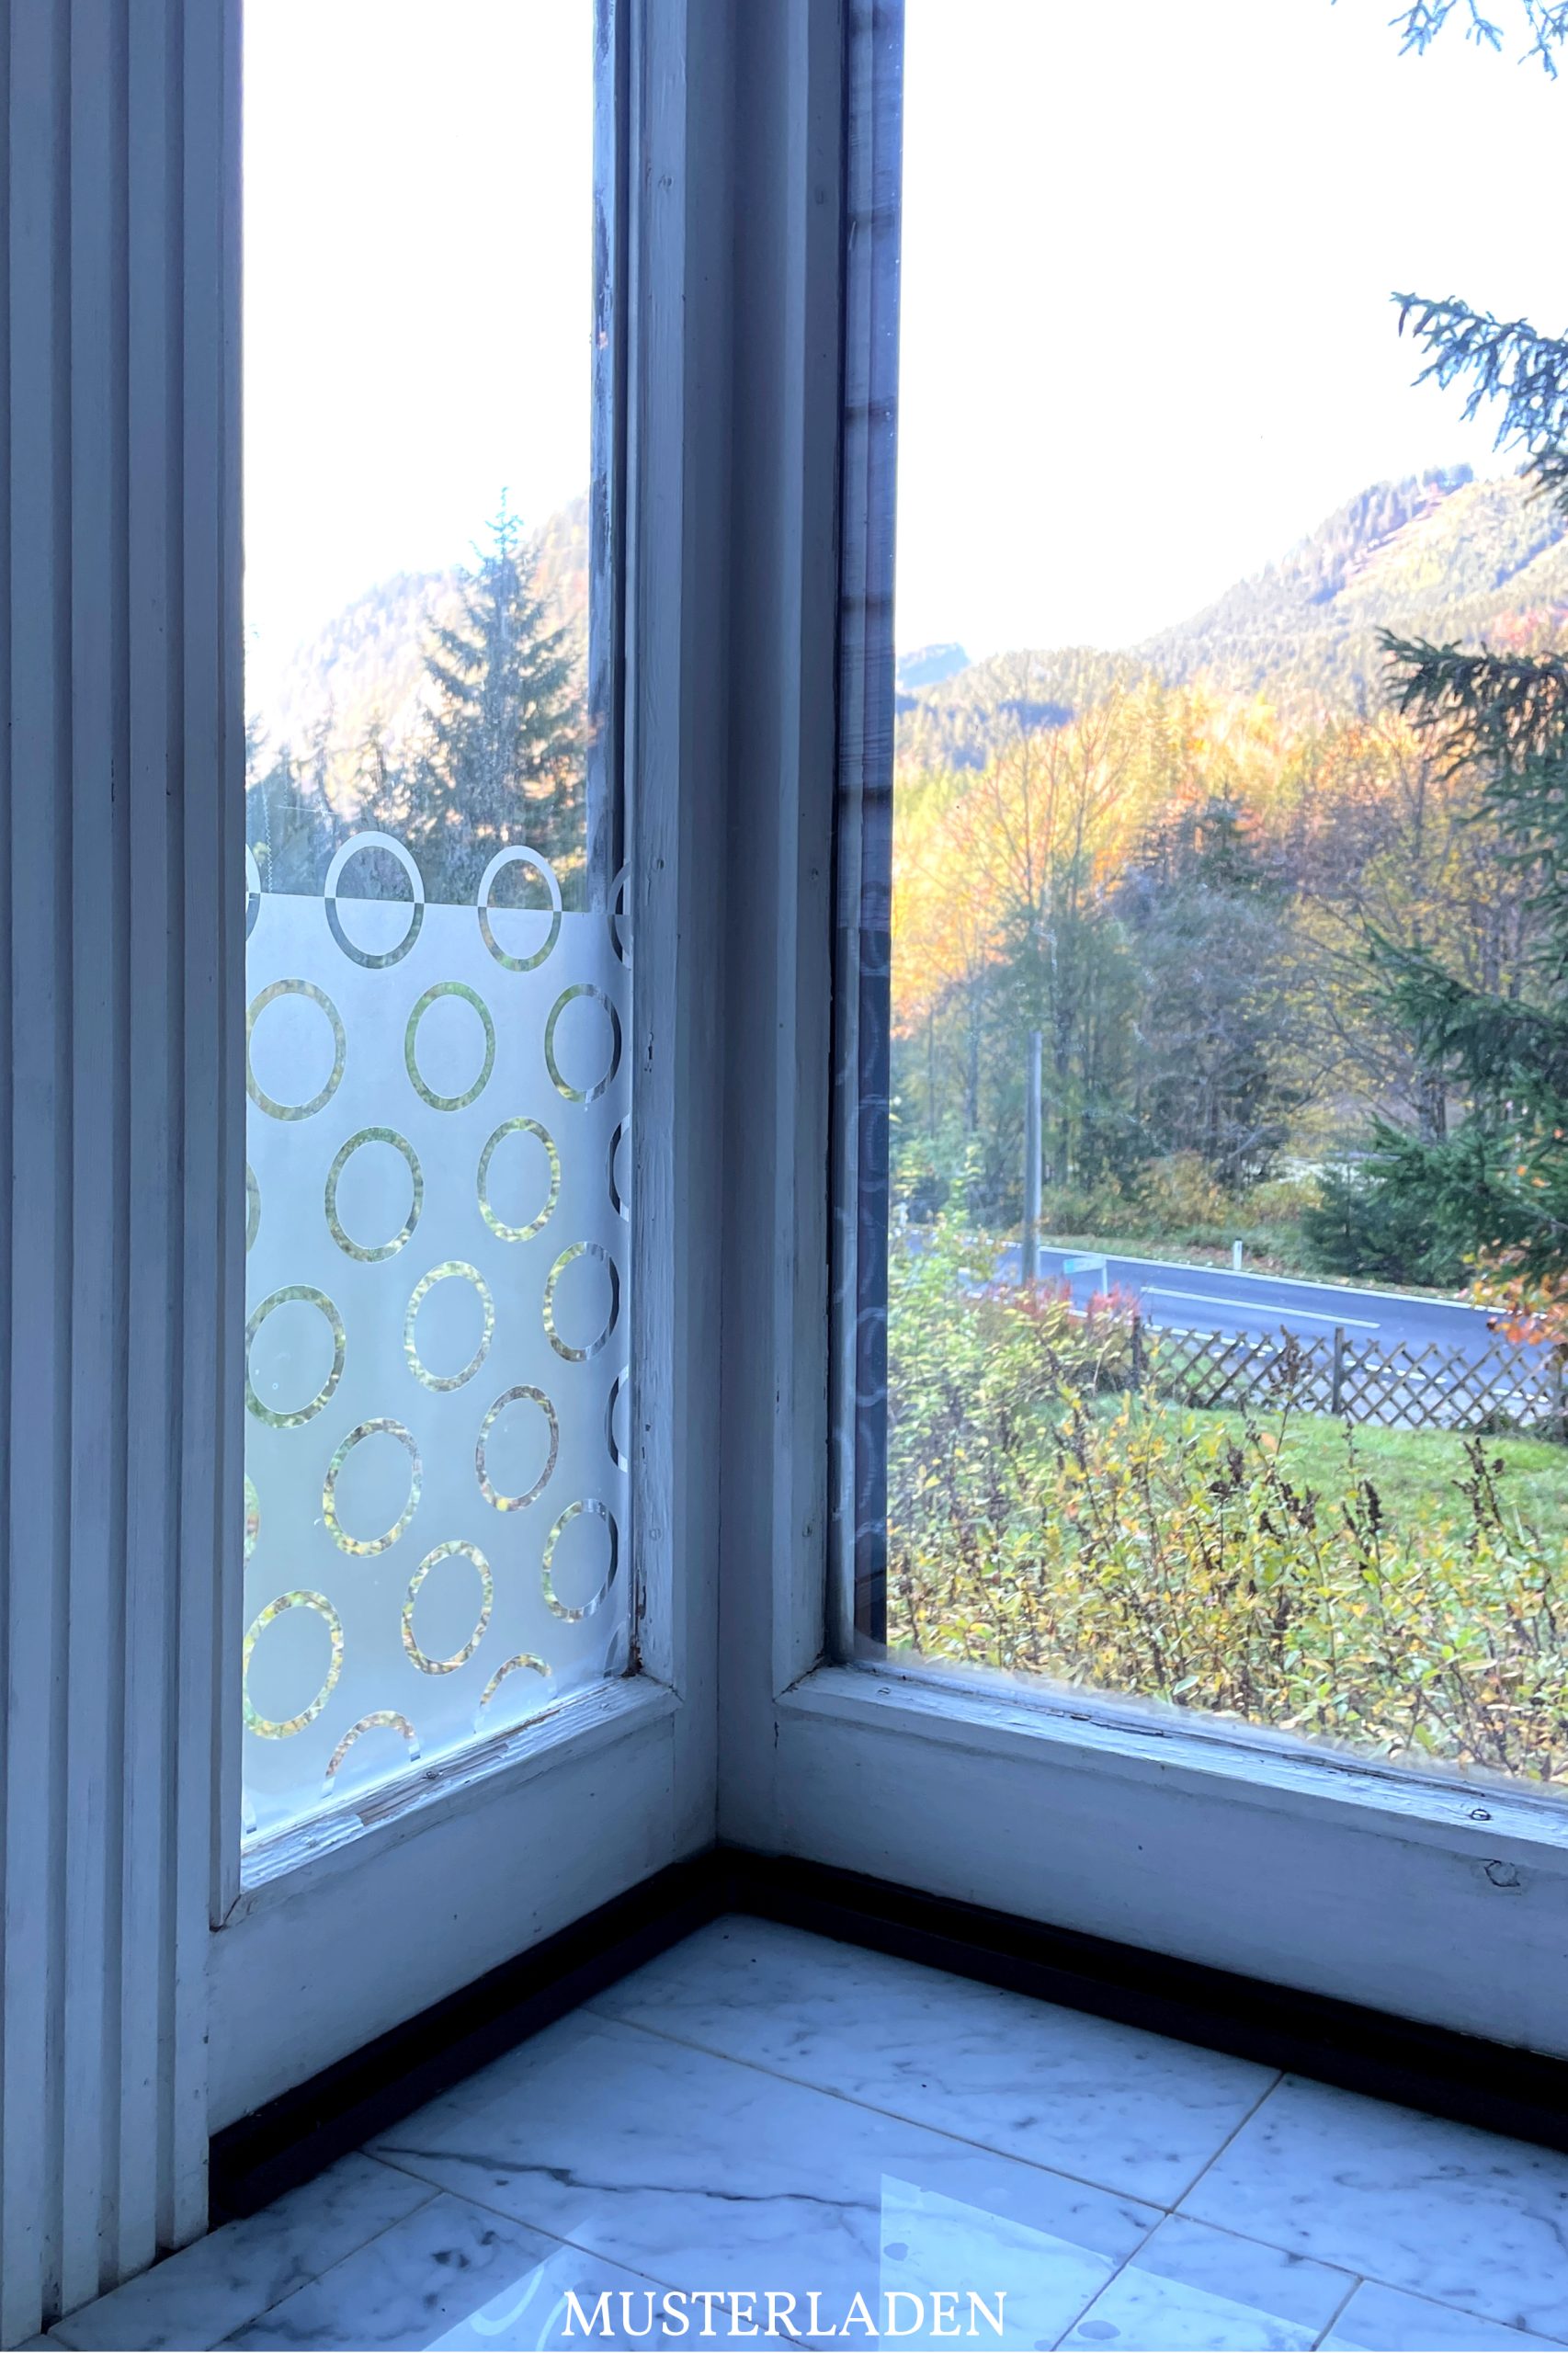 Sichtschutzfolie Fenster - 2 Anwendungsbeispiele - Musterladen